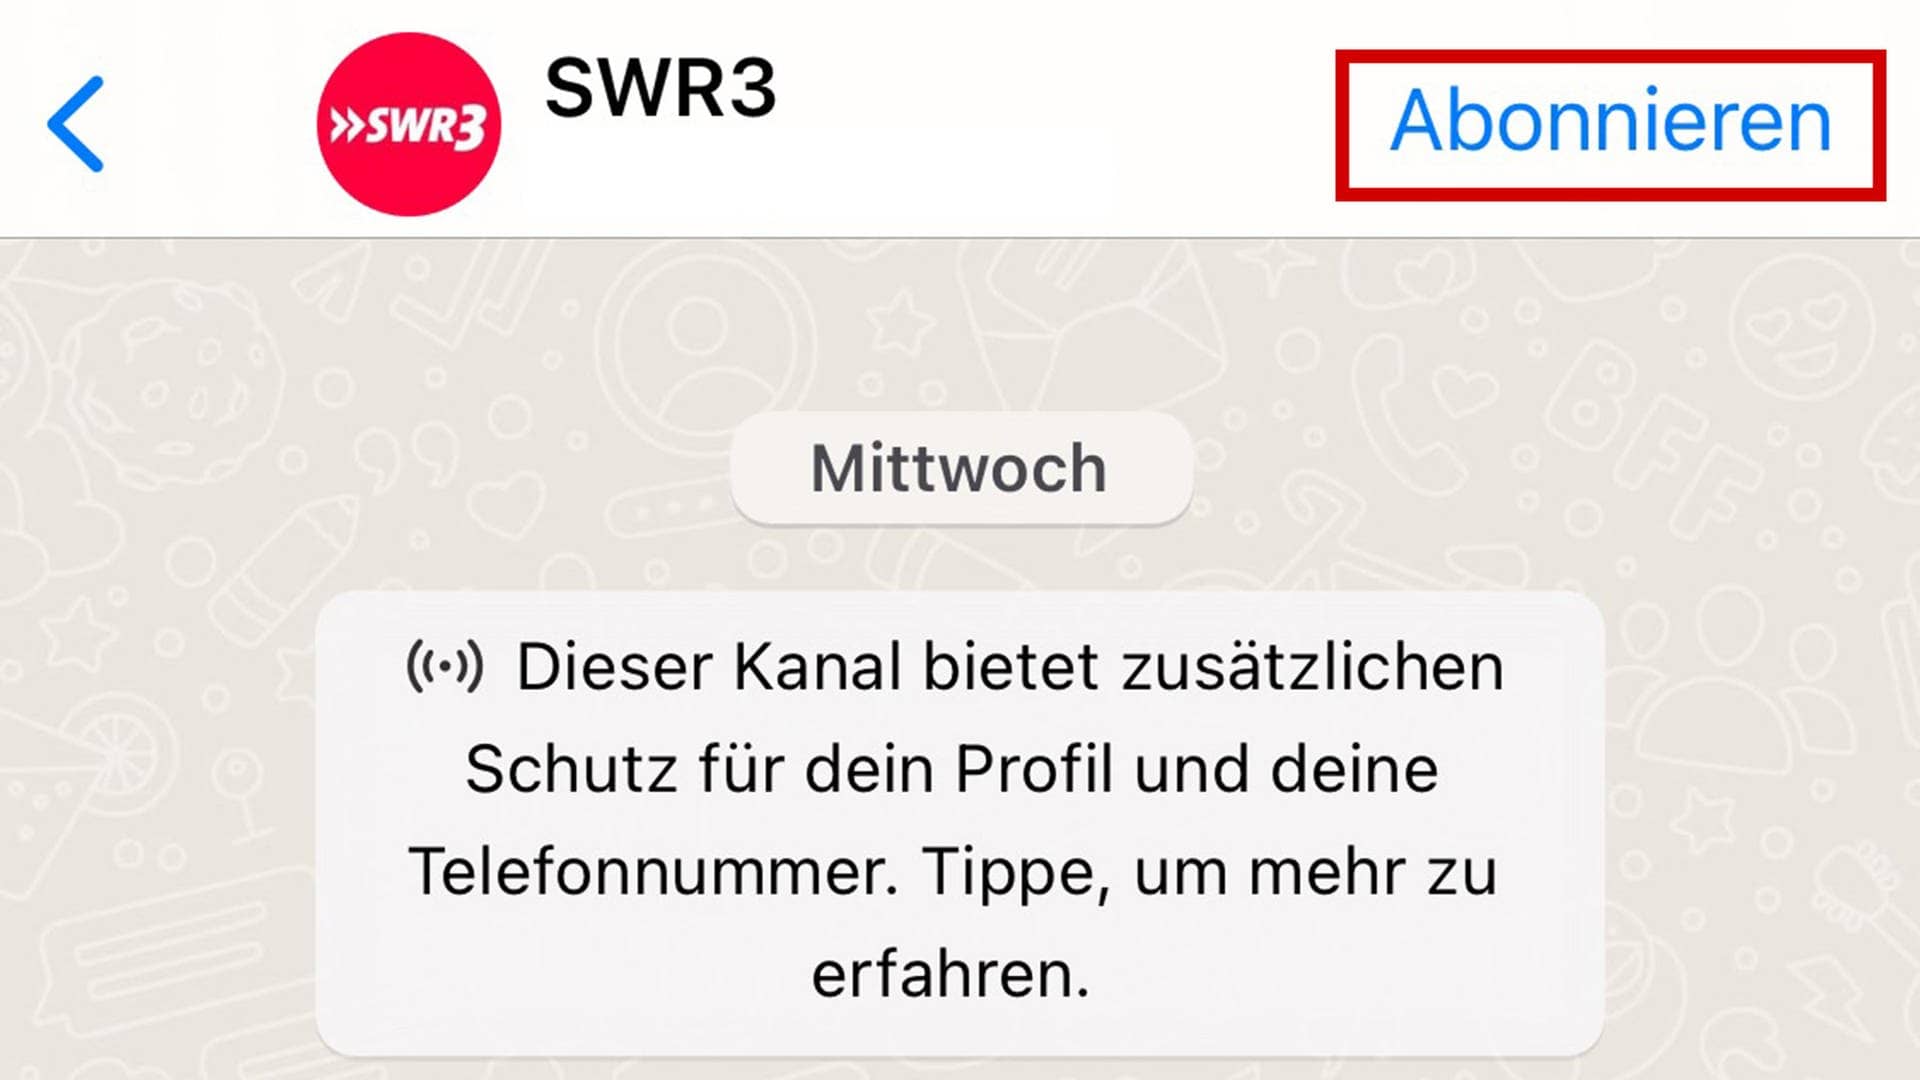 Der Whatsapp-Kanal von SWR3